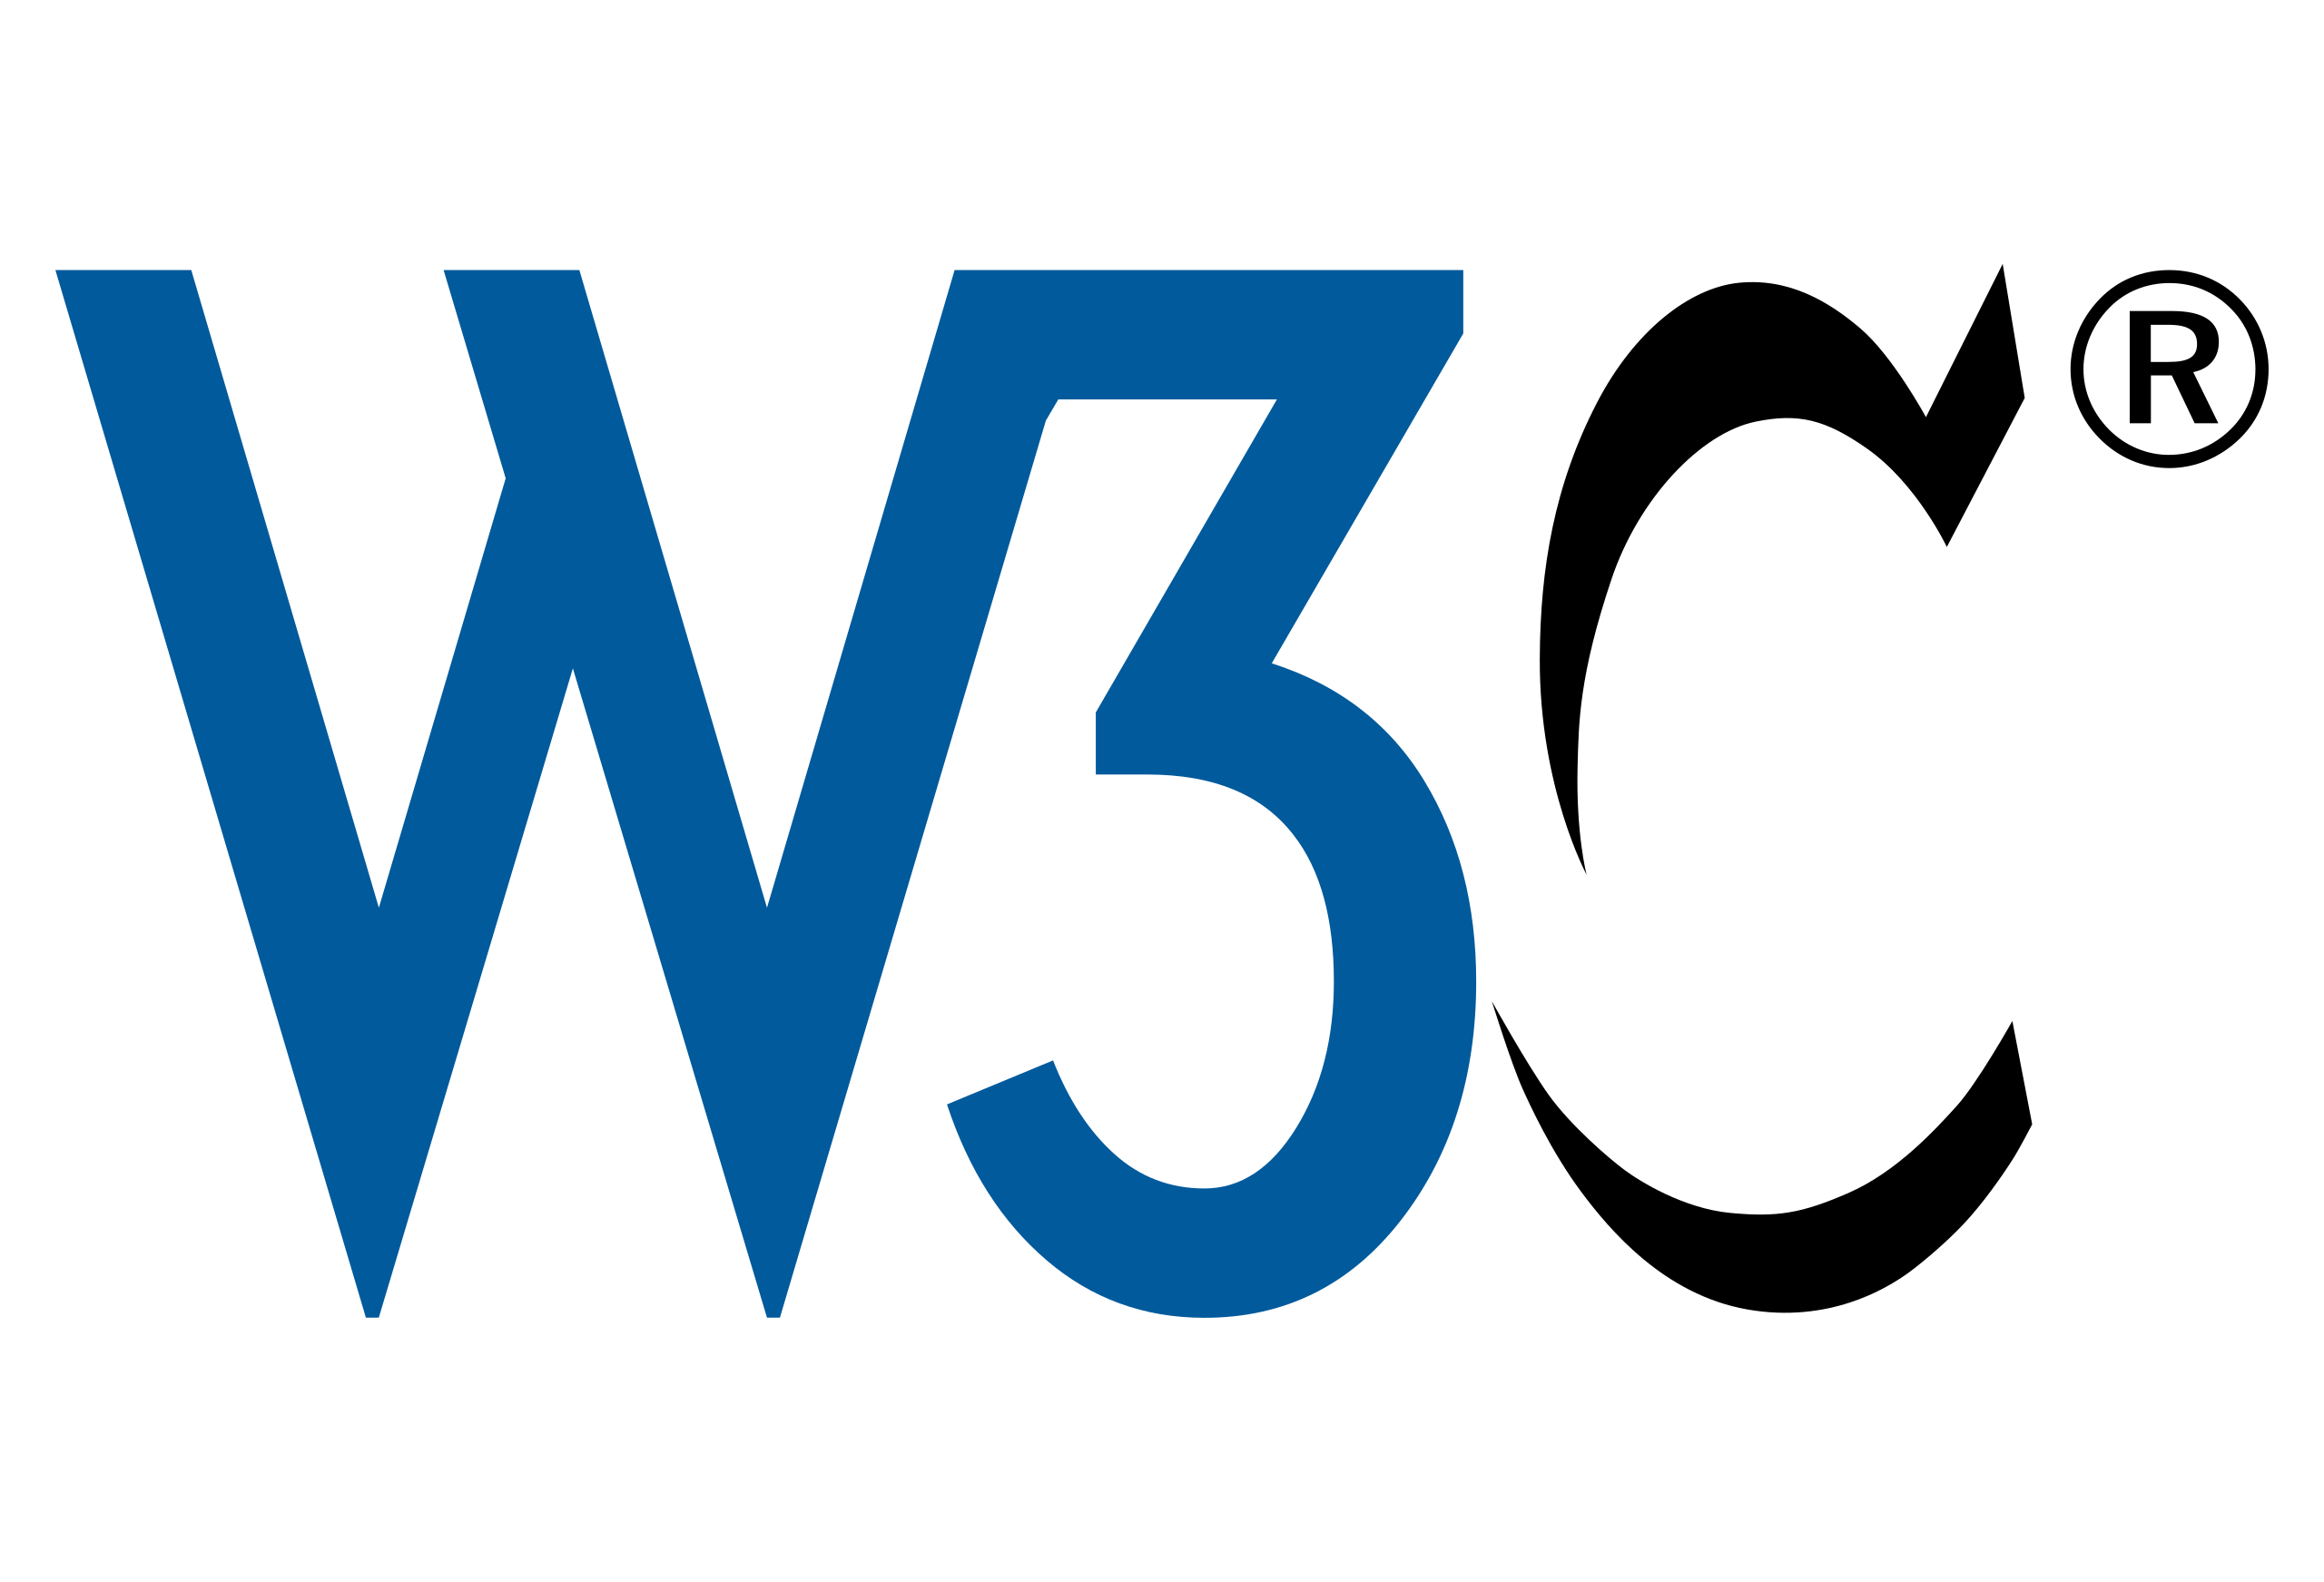 [W3C logo.]